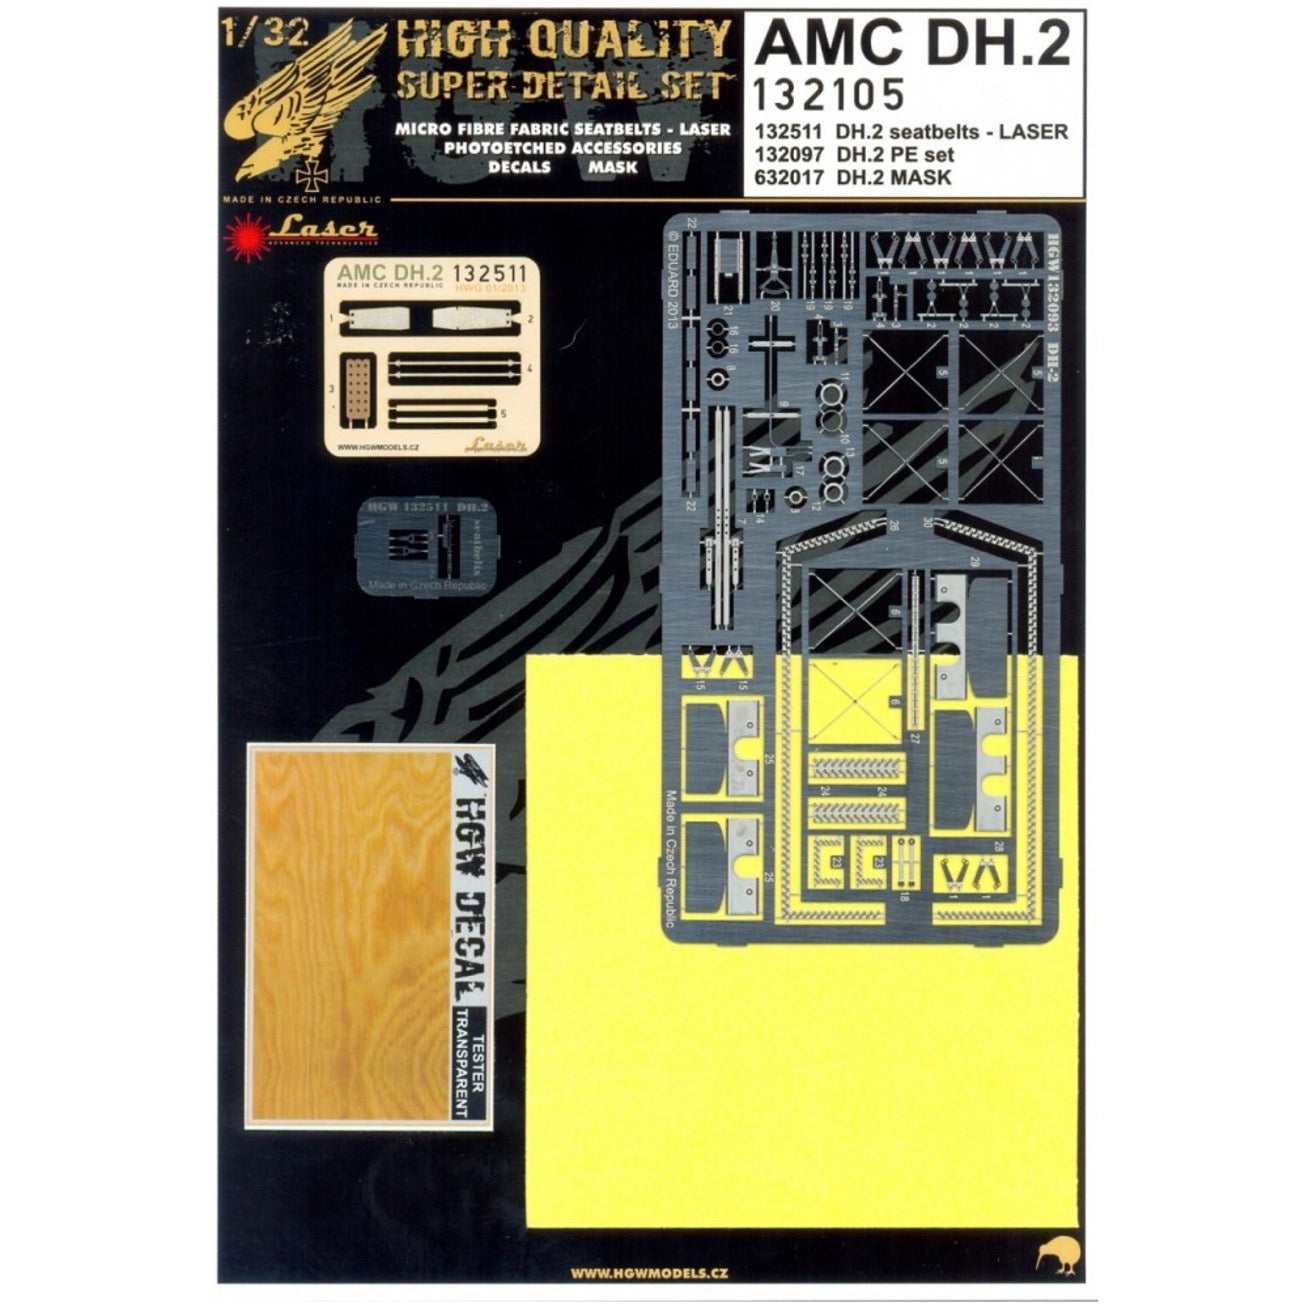 1/32 - Super Detail Set - AMC DH.2